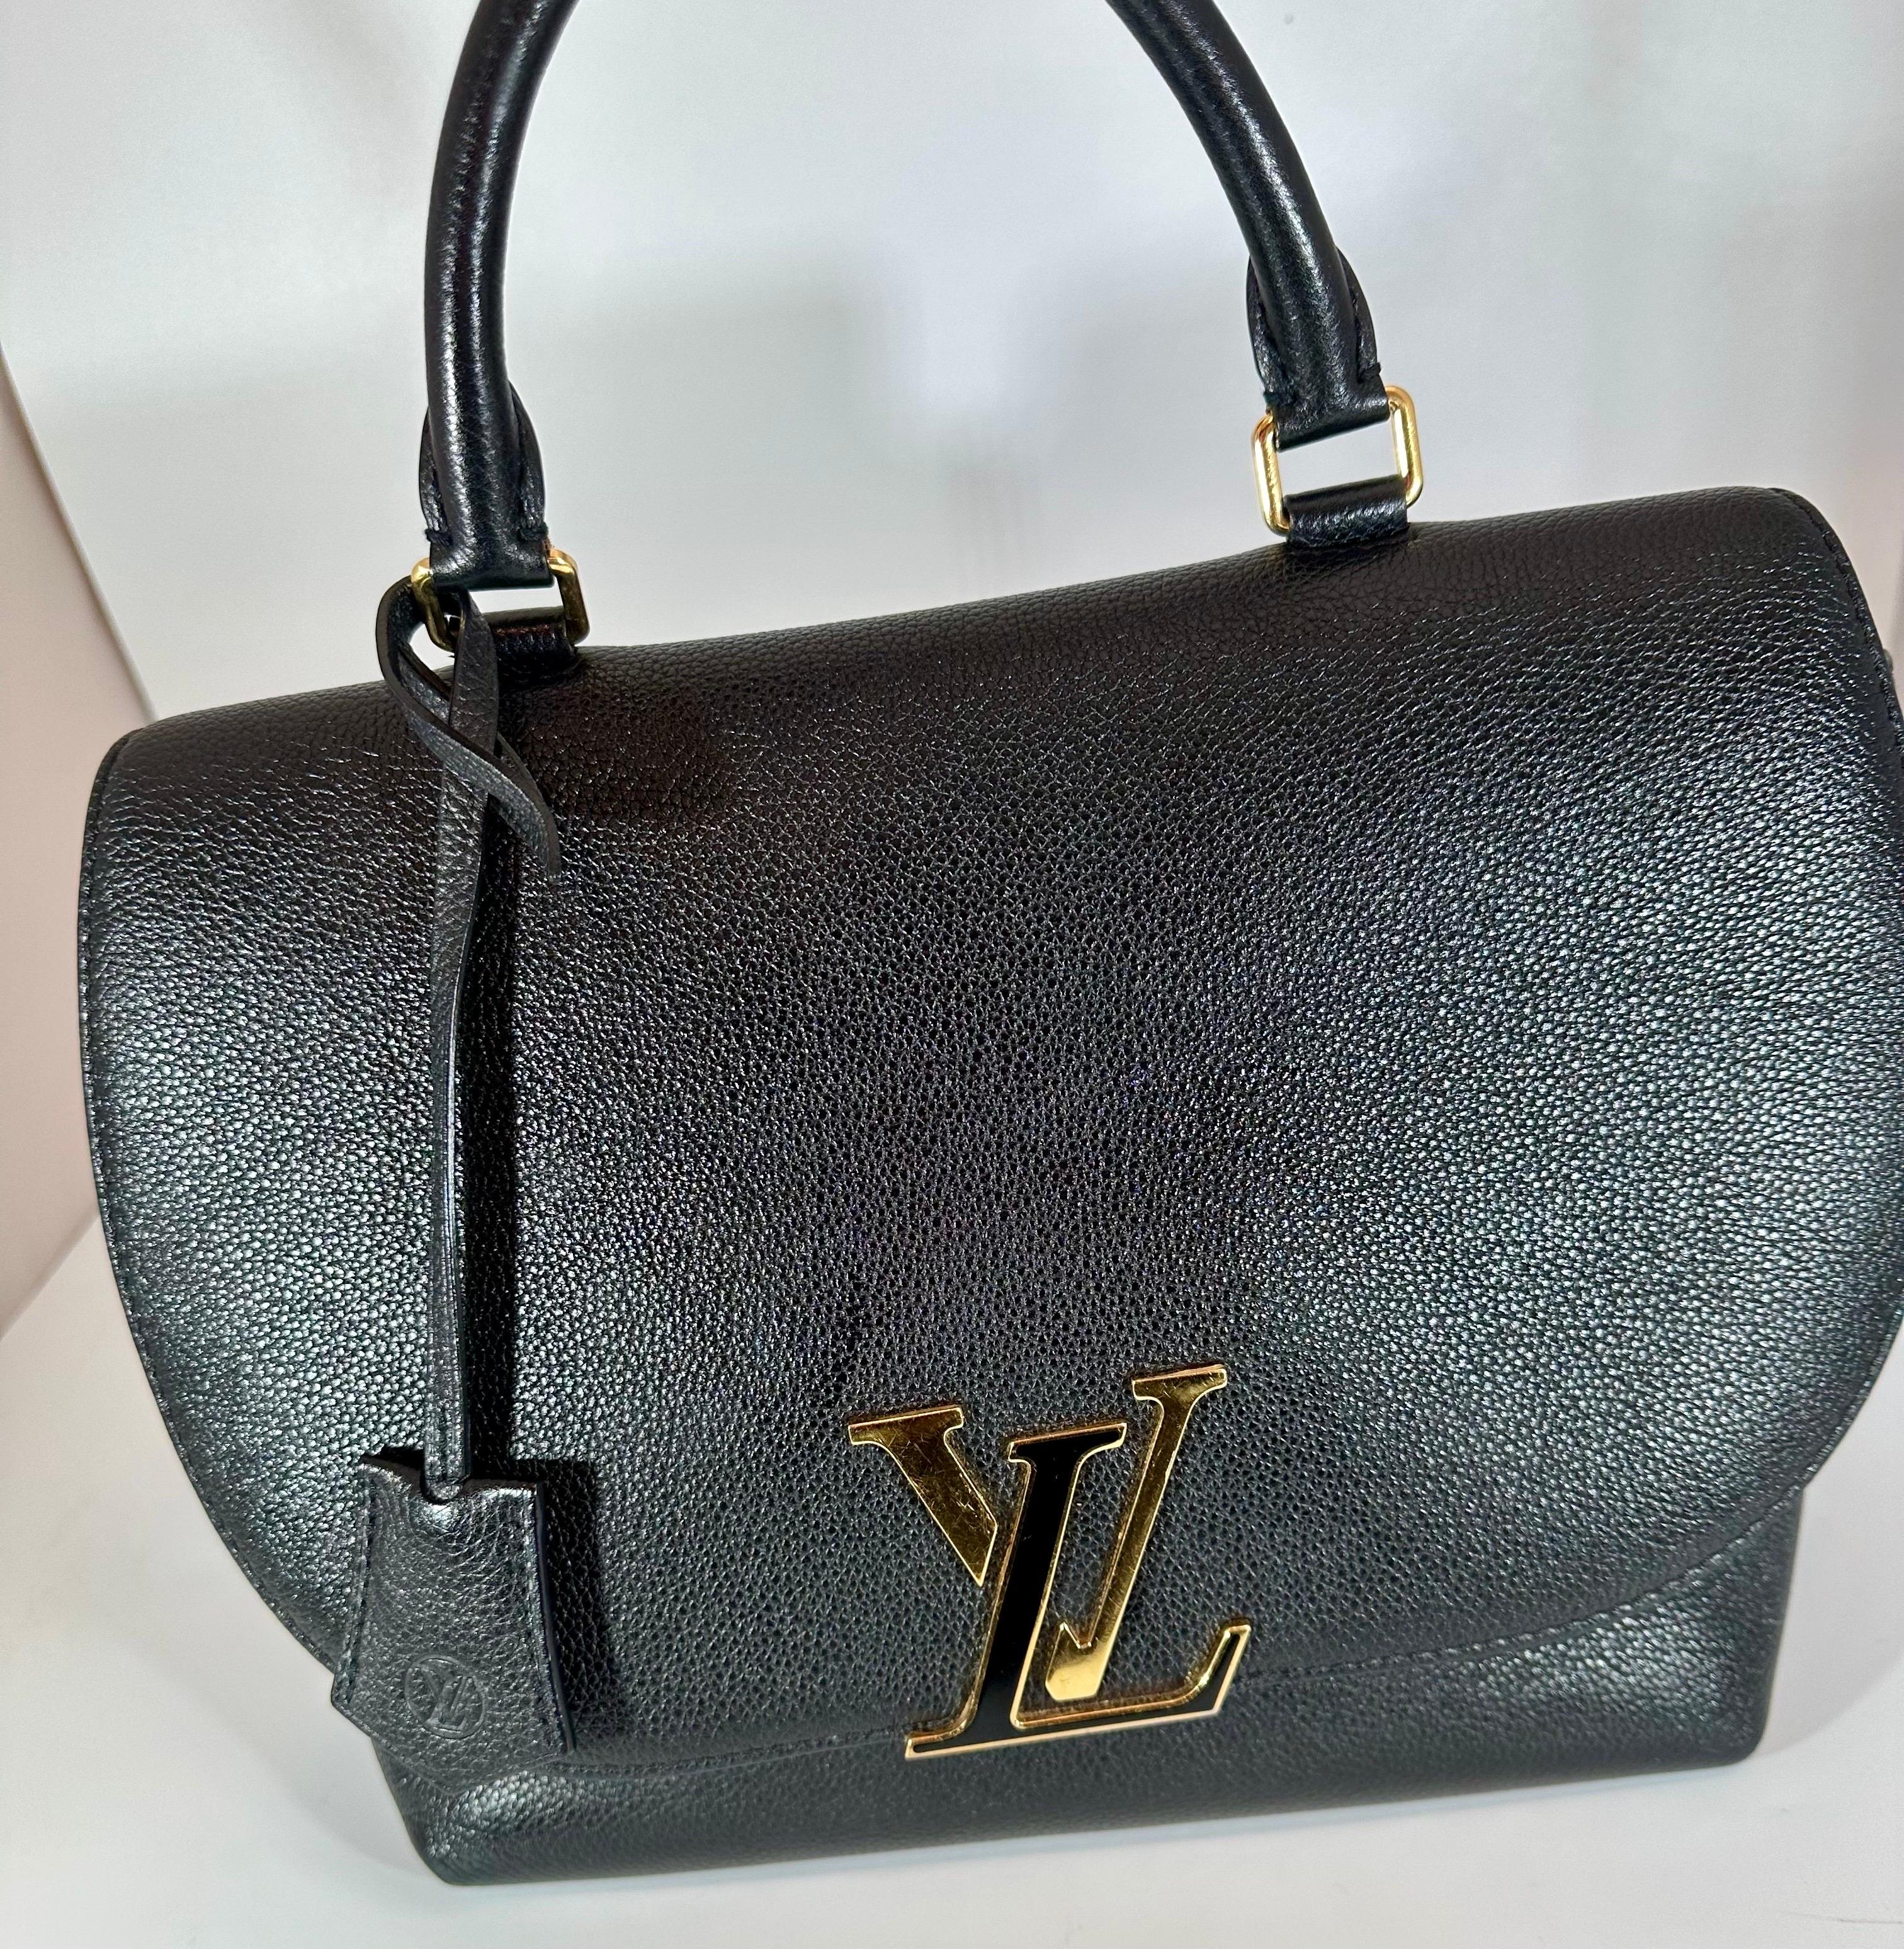 LOUIS VUITTON Black Taurillon Leather Volta Bag/ Hand bag, Excellent ...